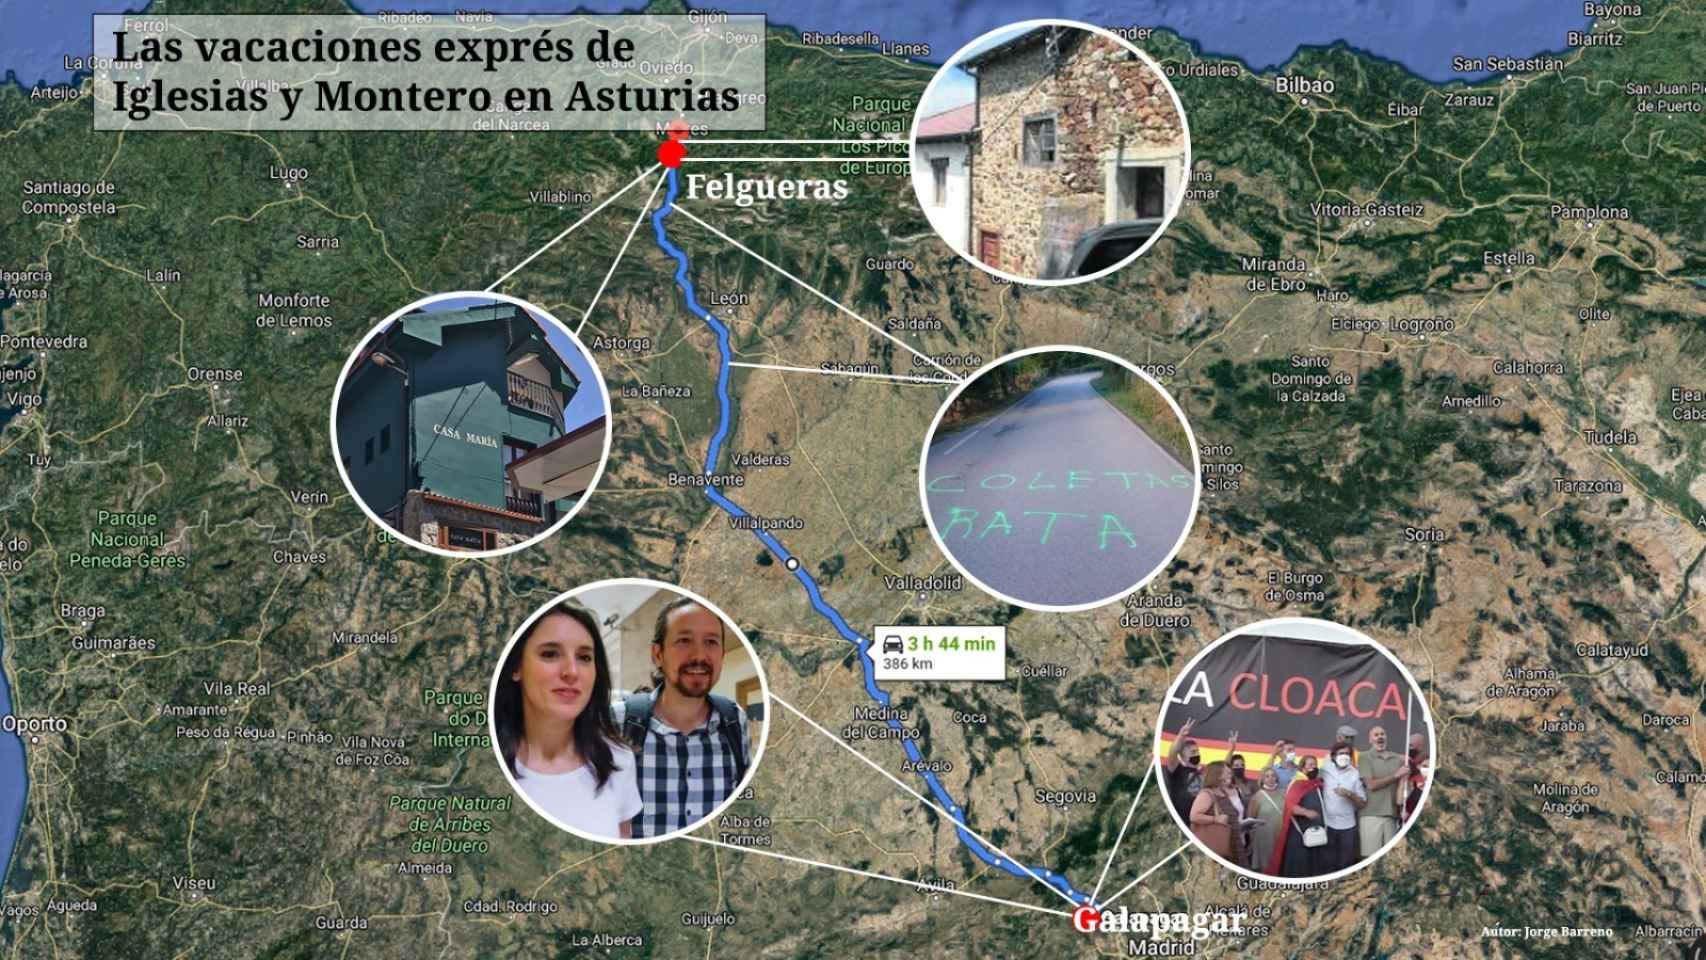 Pablo Iglesias e Irene Montero han pasado unos días de vacaciones en Asturias.